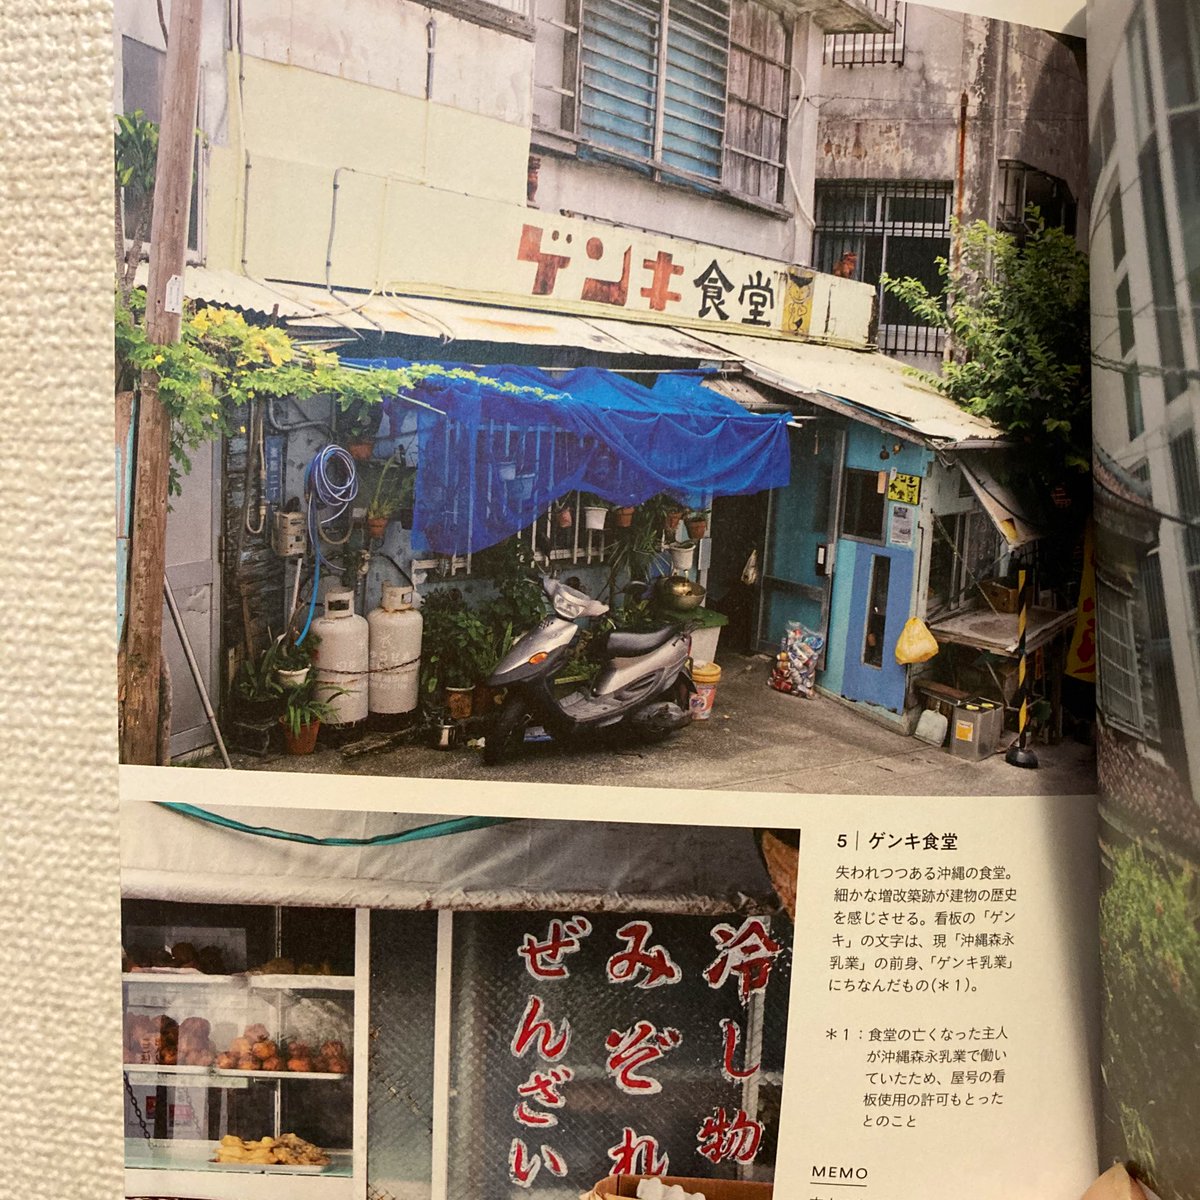 私が「旅の本」で沖縄のアサヒ食堂のことを描いたら、展示にいらしてくださった編集者さんがこんな本をくださったんだけどすごい面白い!!
沖縄に住んでる人いいなあ。コロナが終息したら即行きたい。
@twovirginspb の本です。 